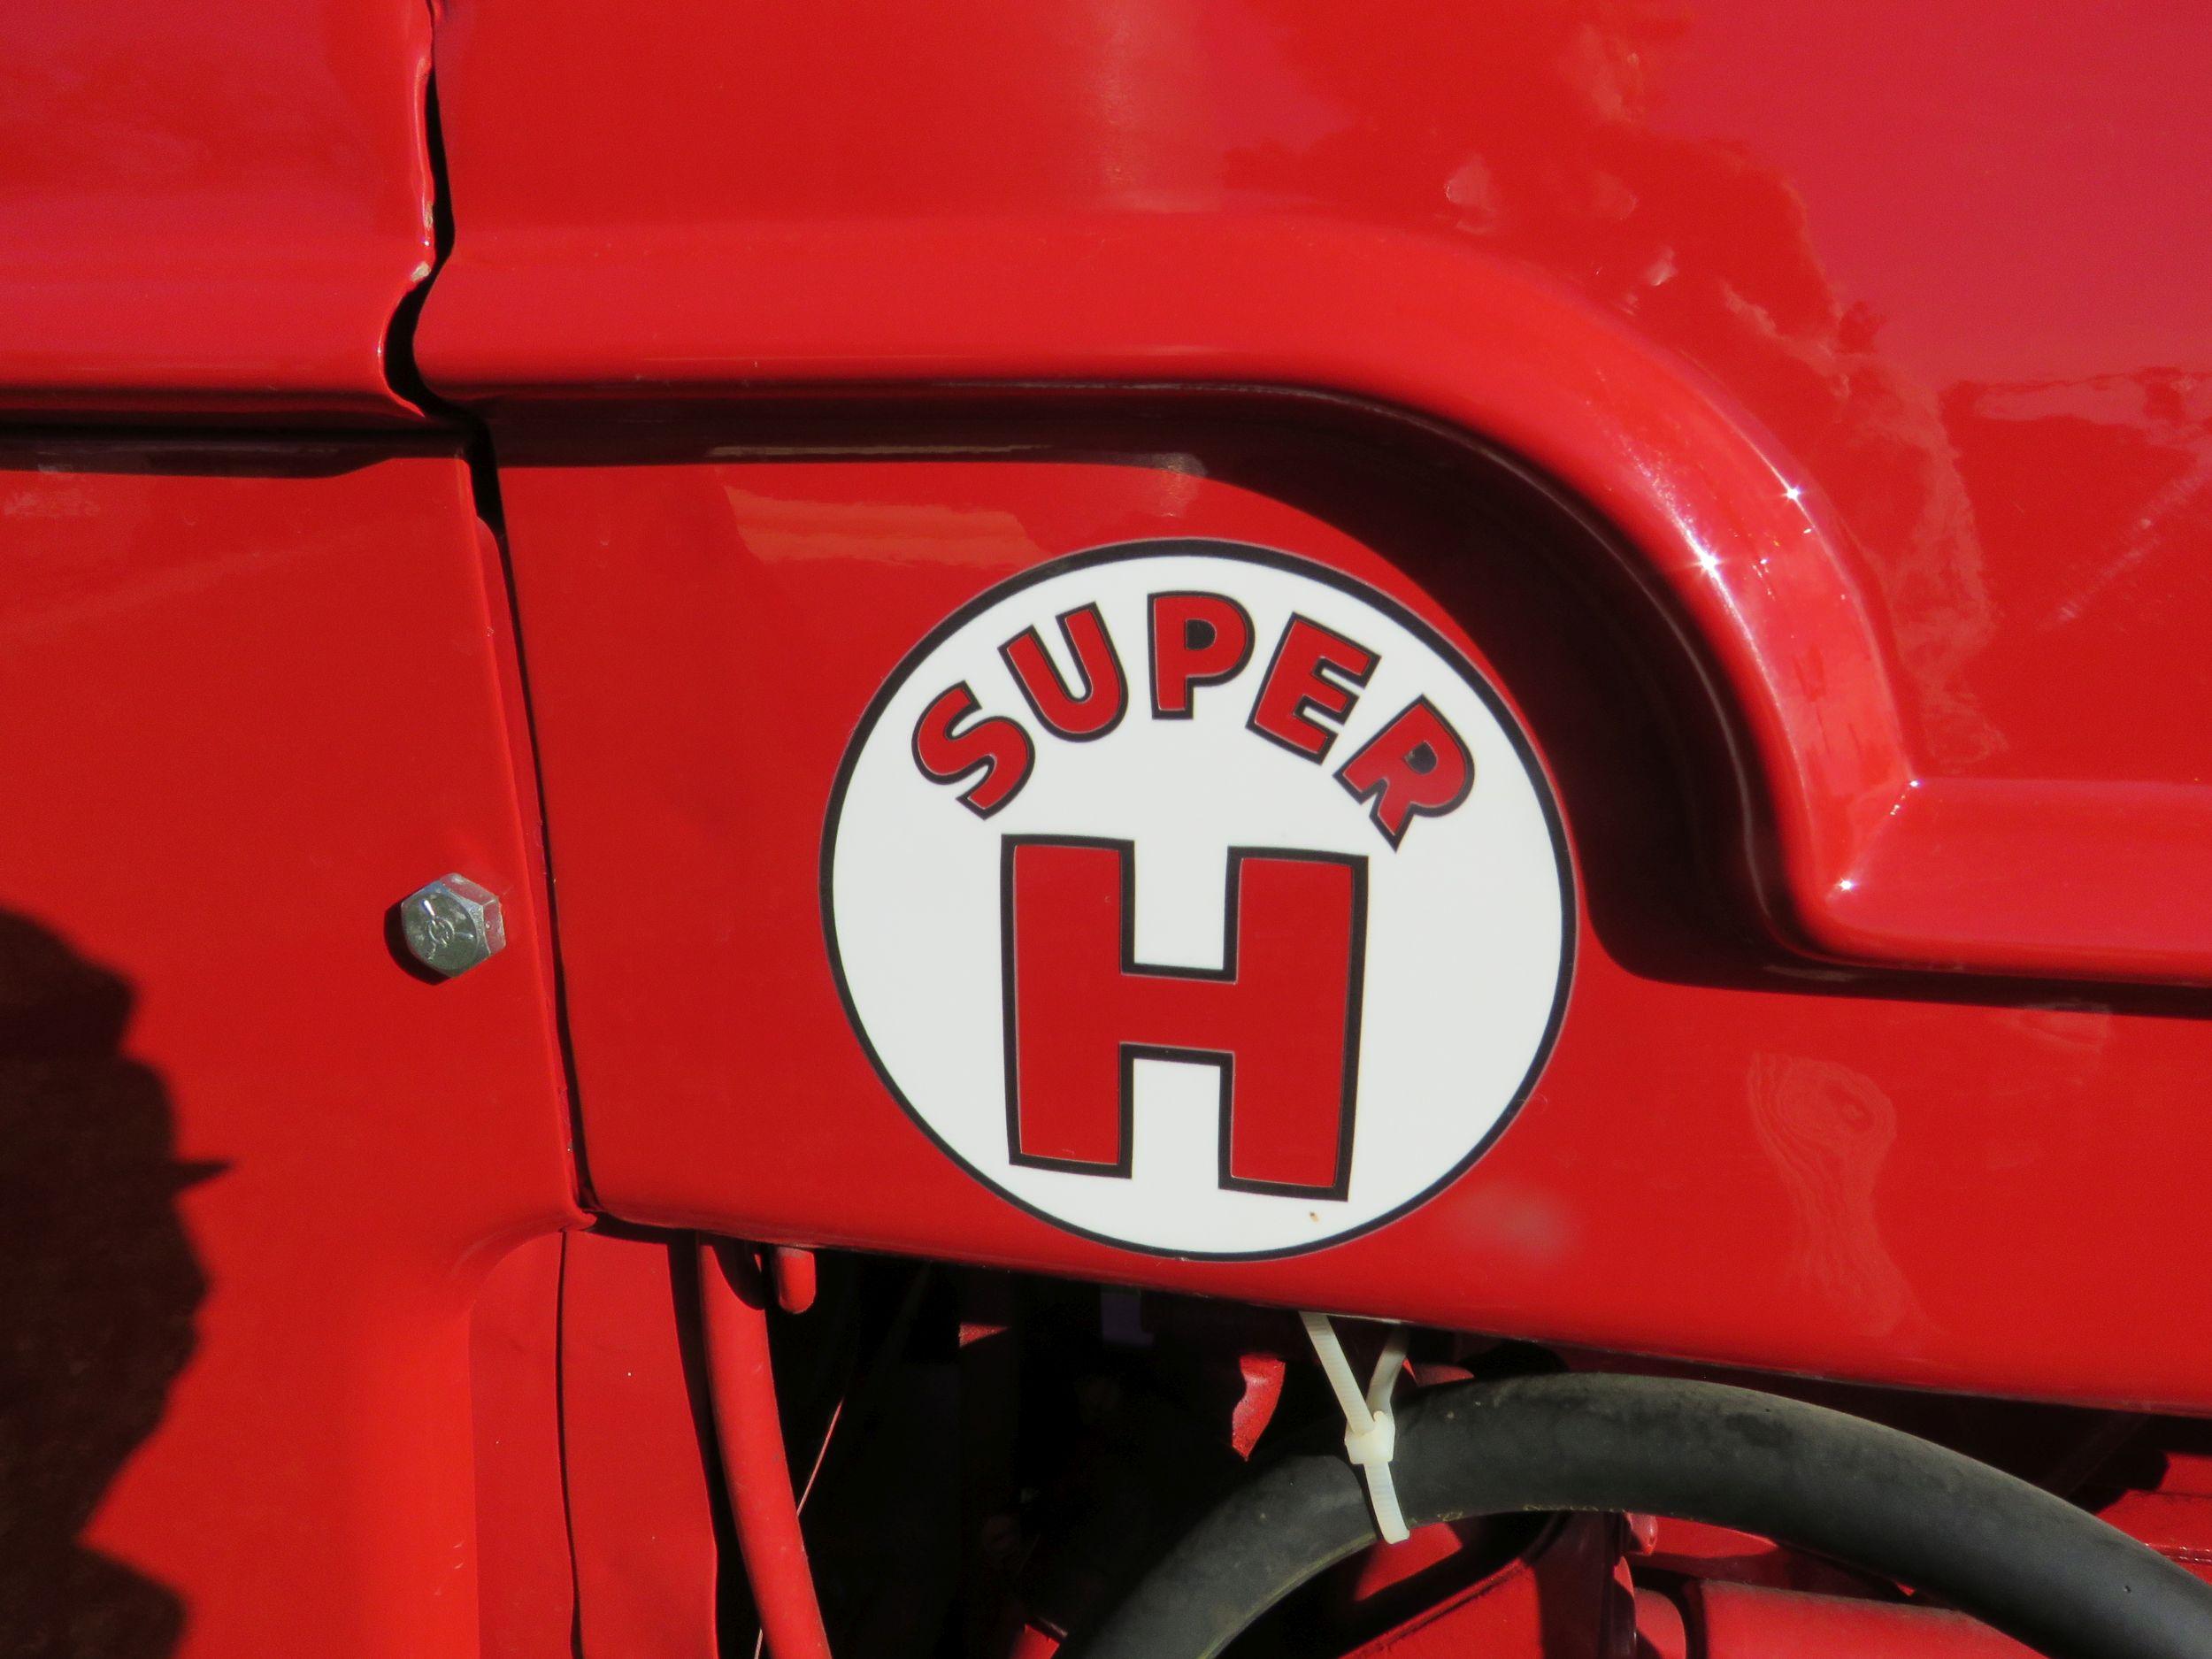 1953 Farmall Super H Tractor